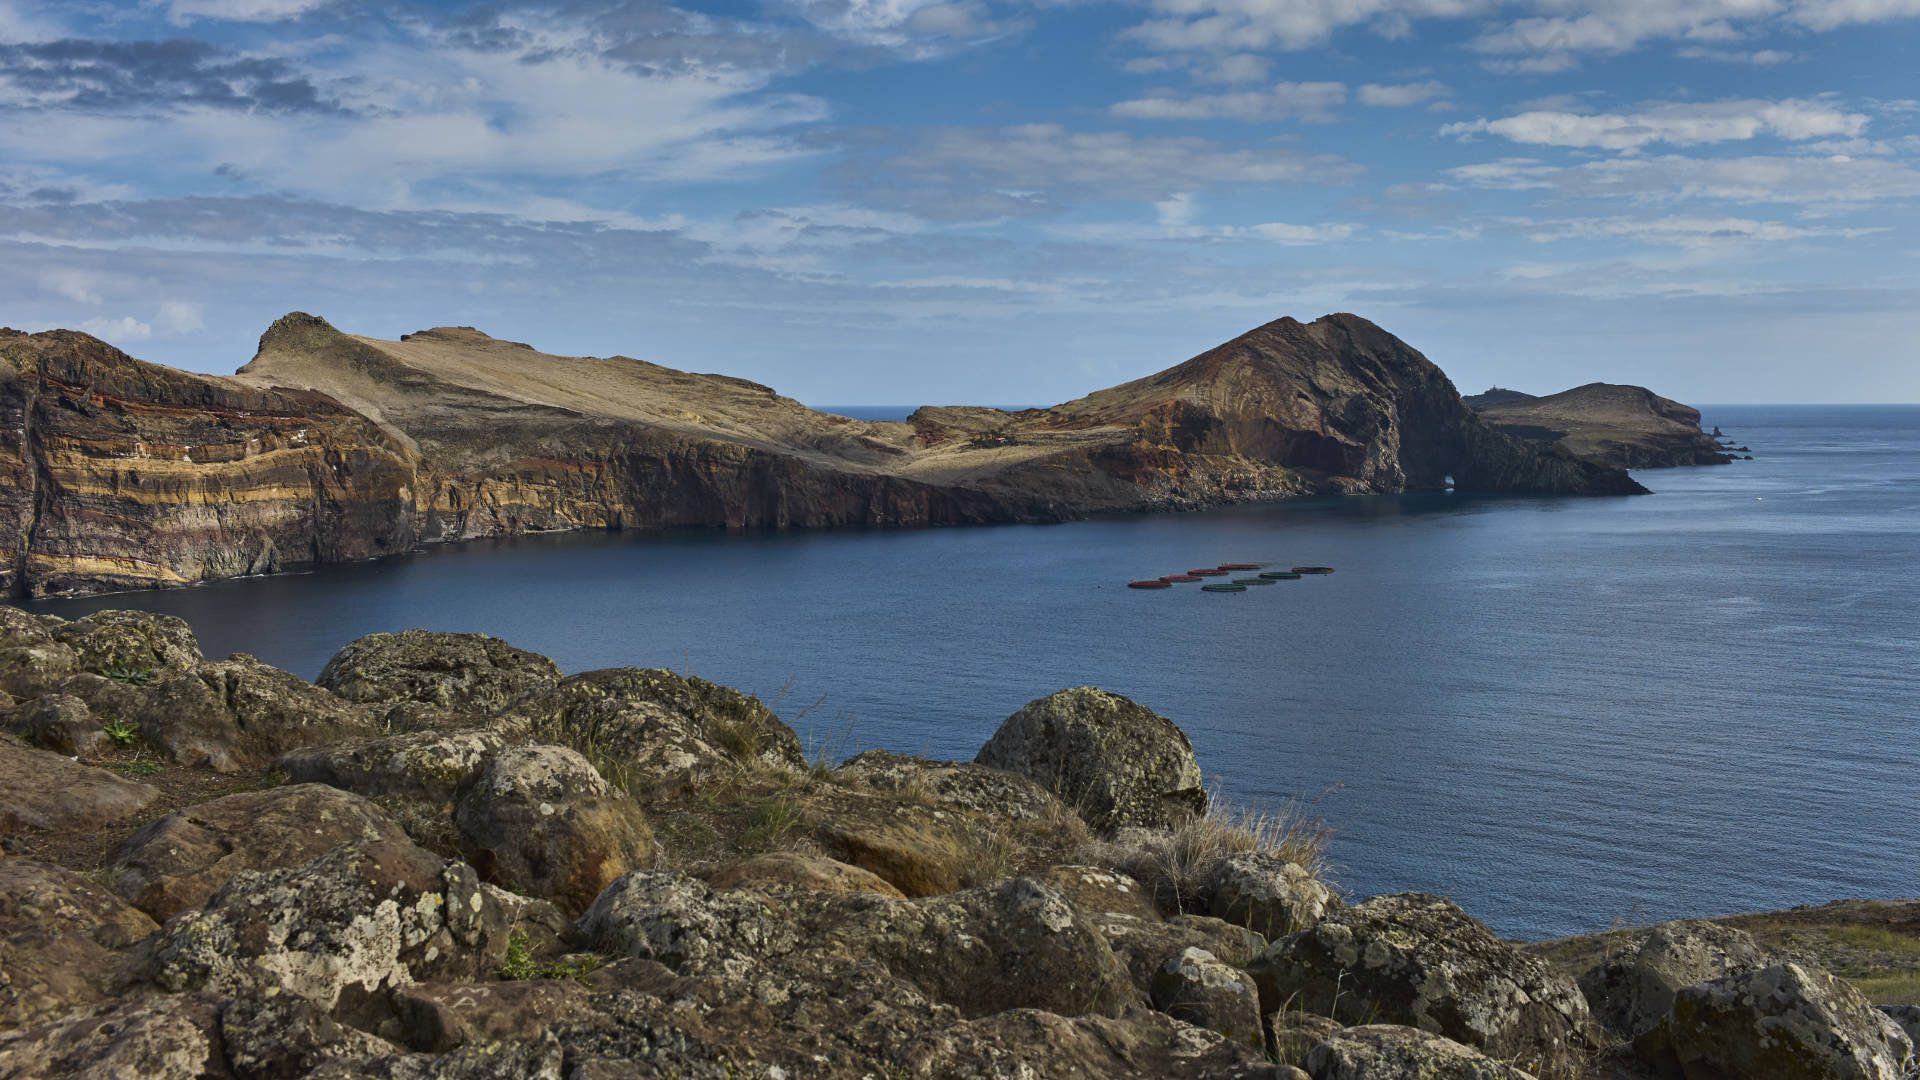 Spektakuläres Madeira – das Ostkap Ponta de São Lourenço.